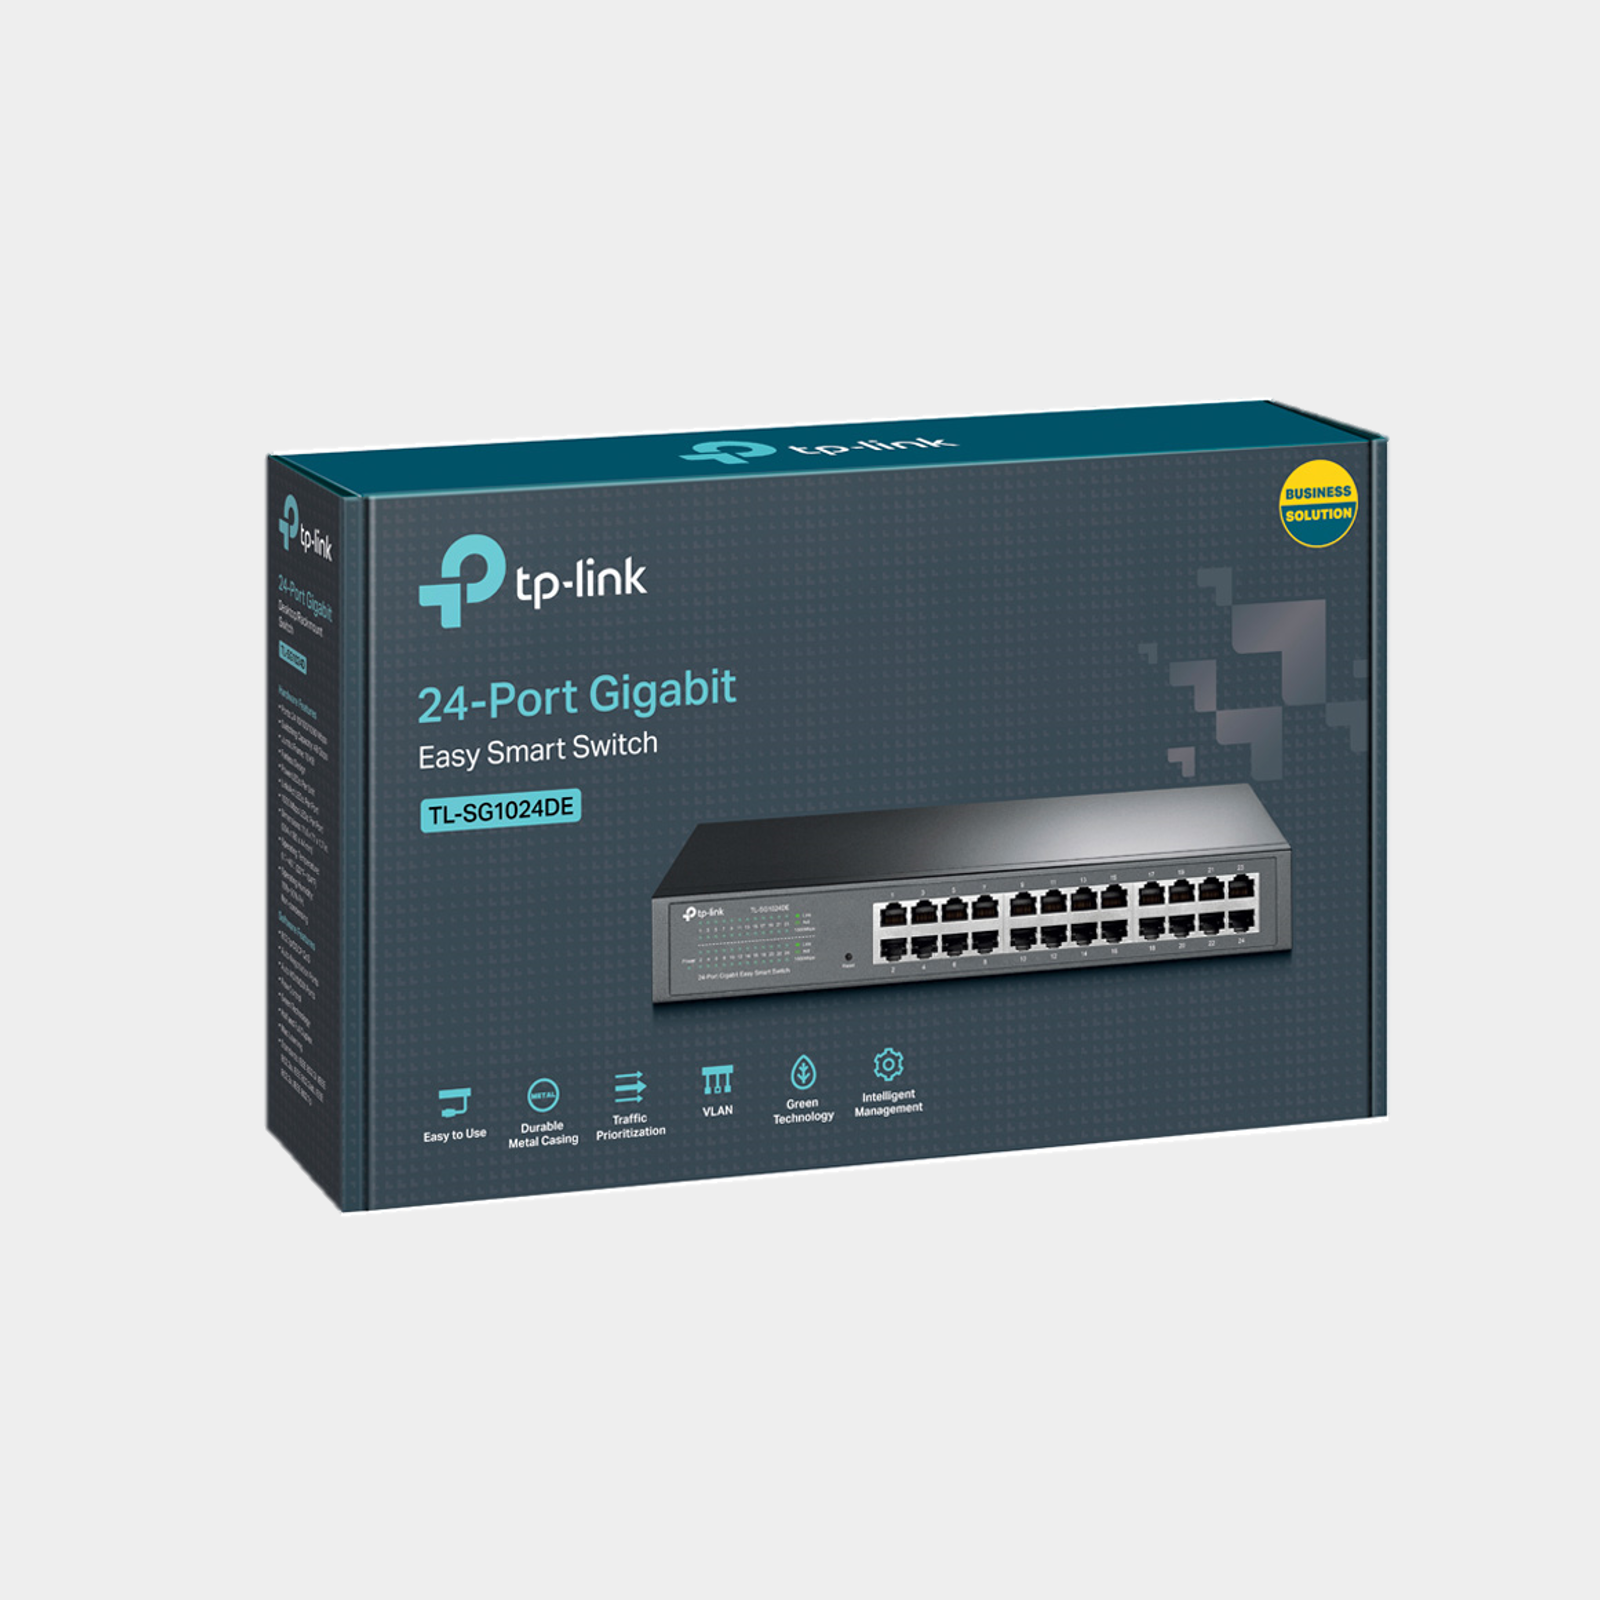 TP-Link 24-Port Gigabit Easy Smart Switch (TL-SG1024DE)